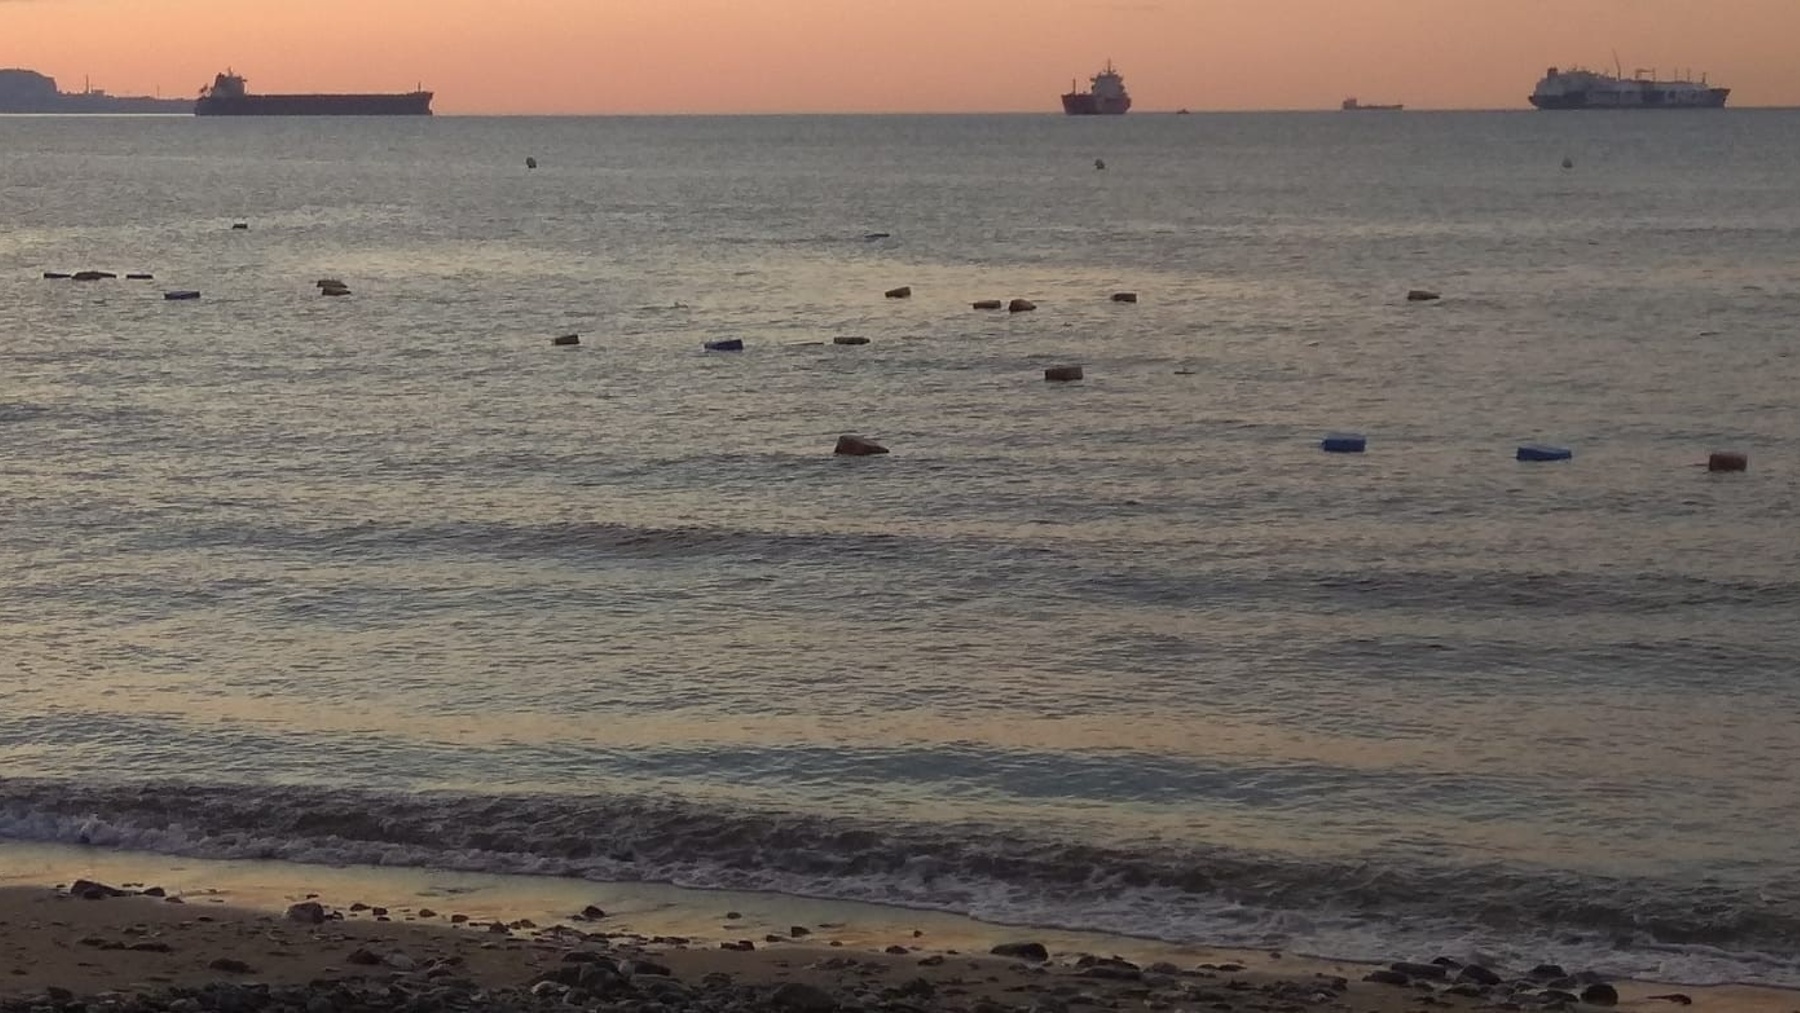 Fardos de hachís flotando en el mar de Algeciras (Cádiz).